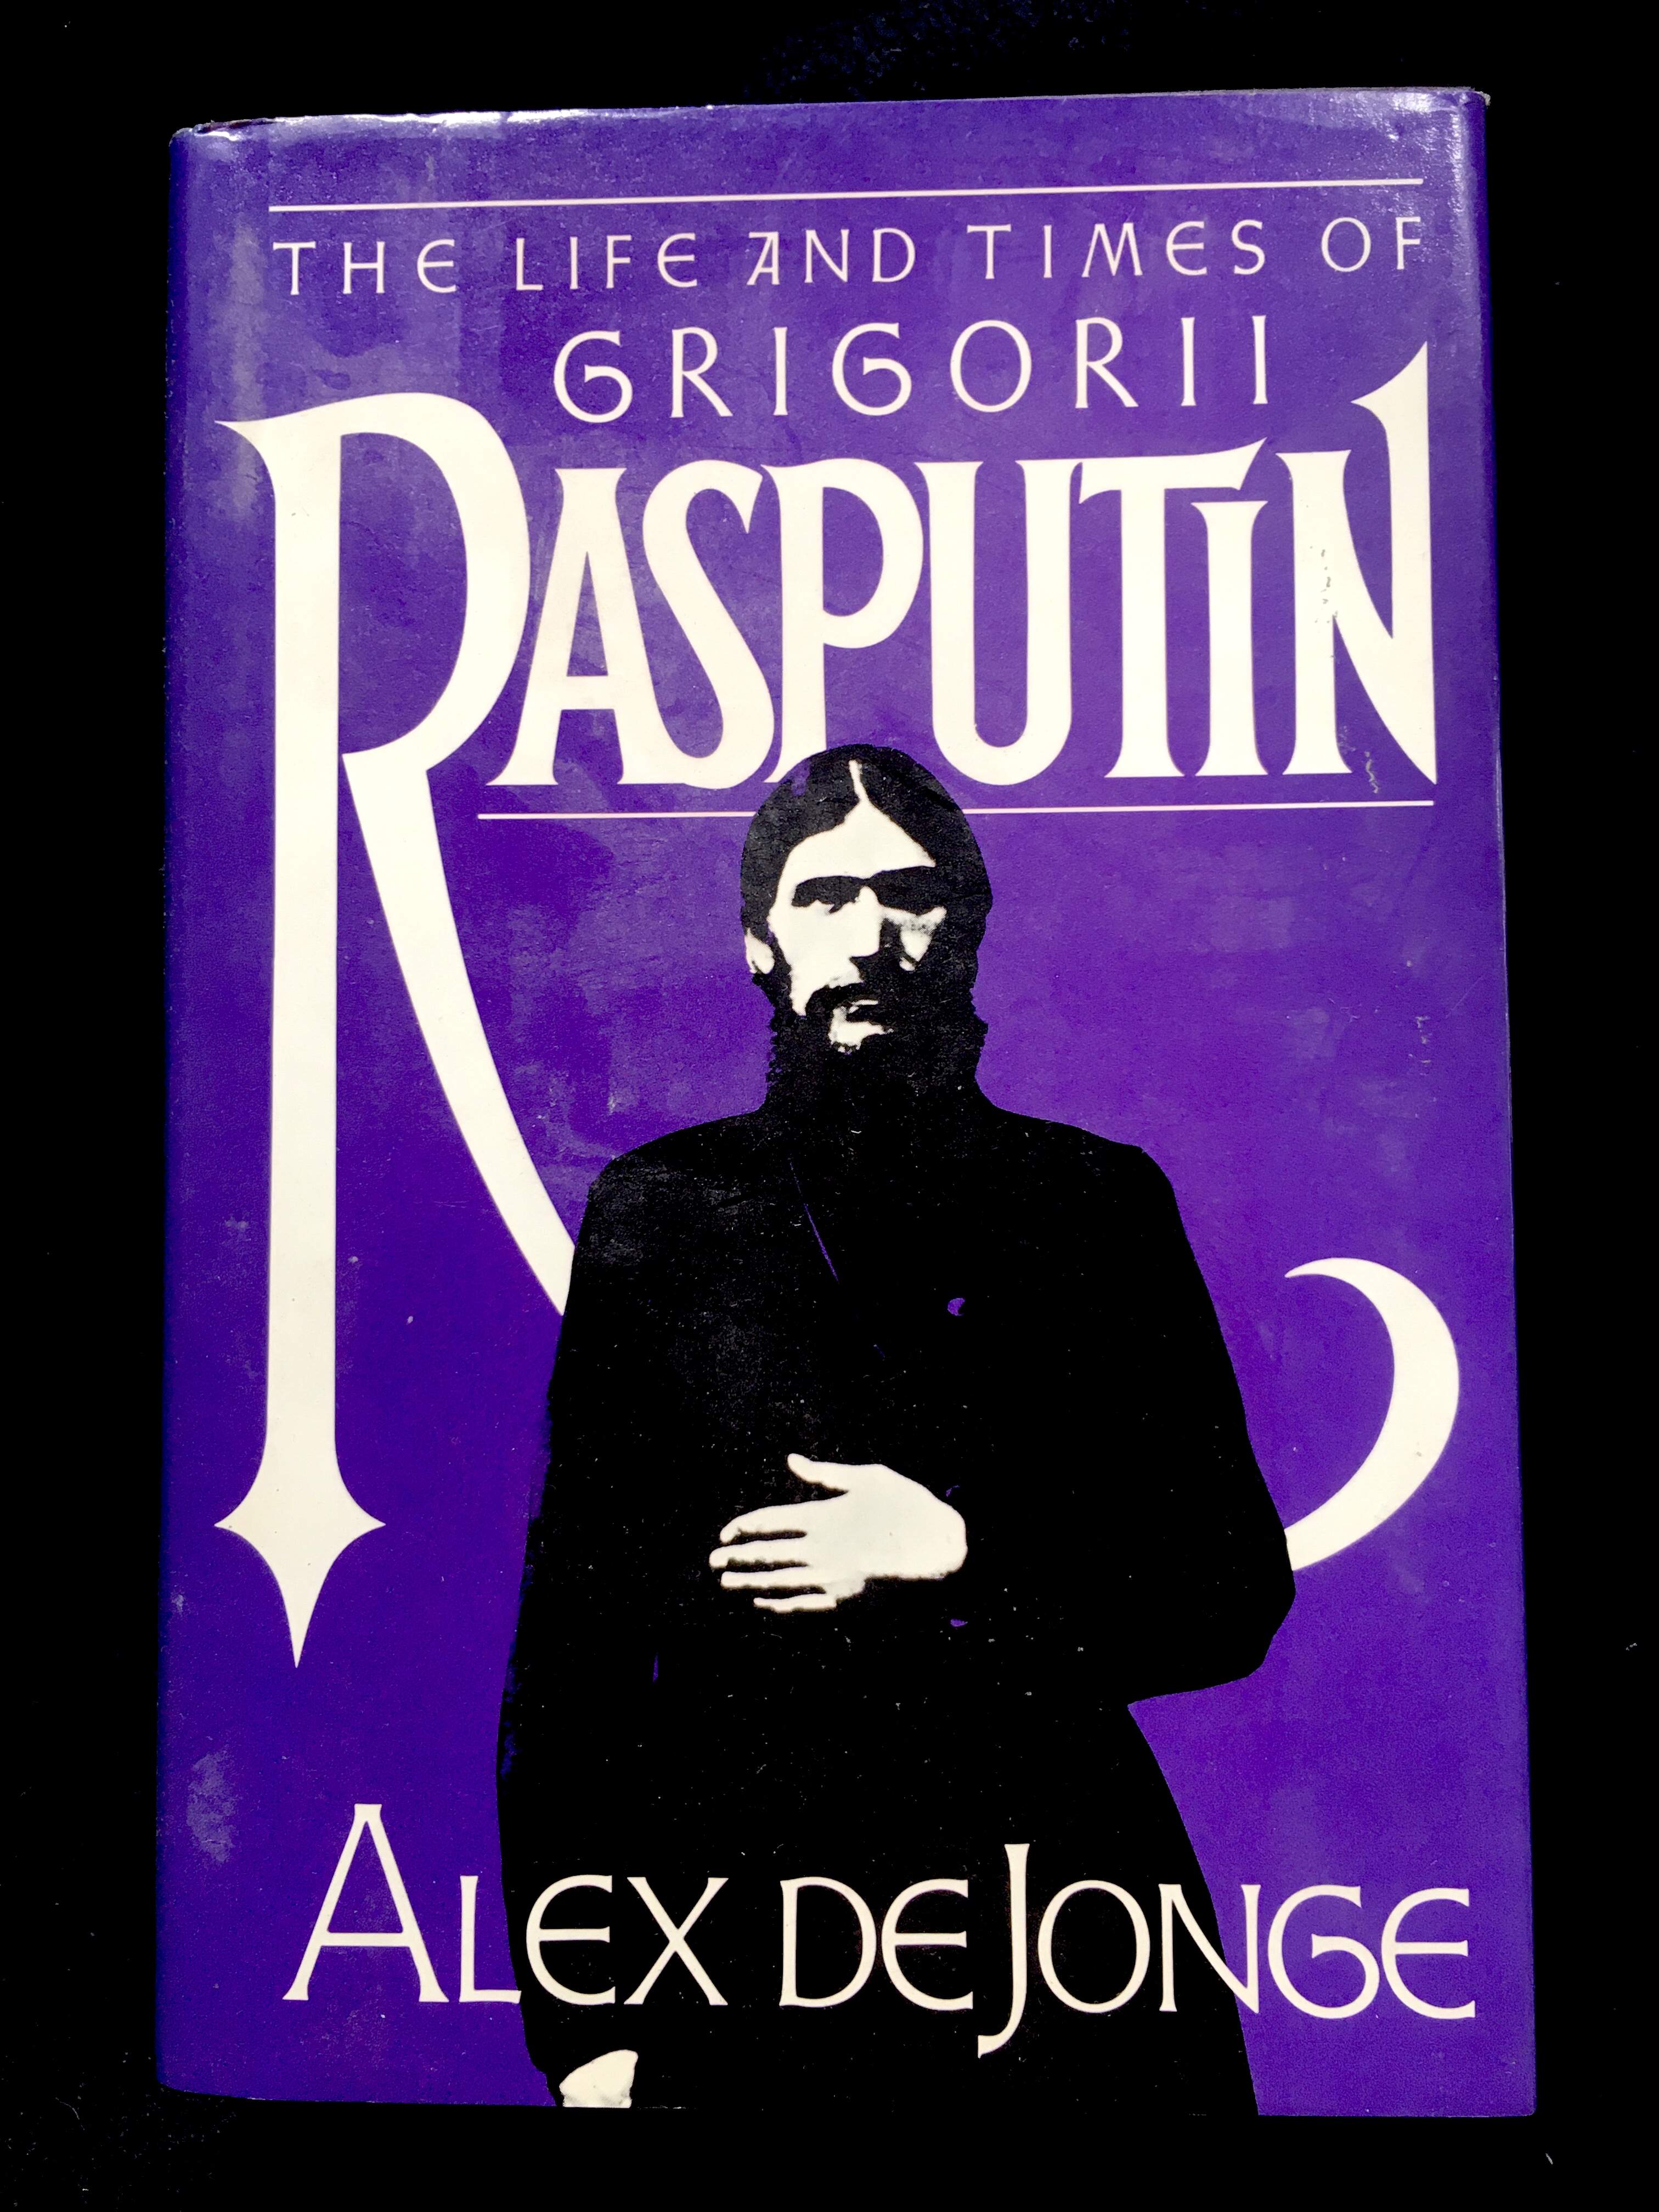 The Life And Times Of Grigorii Rasputin by Alex DeJonge